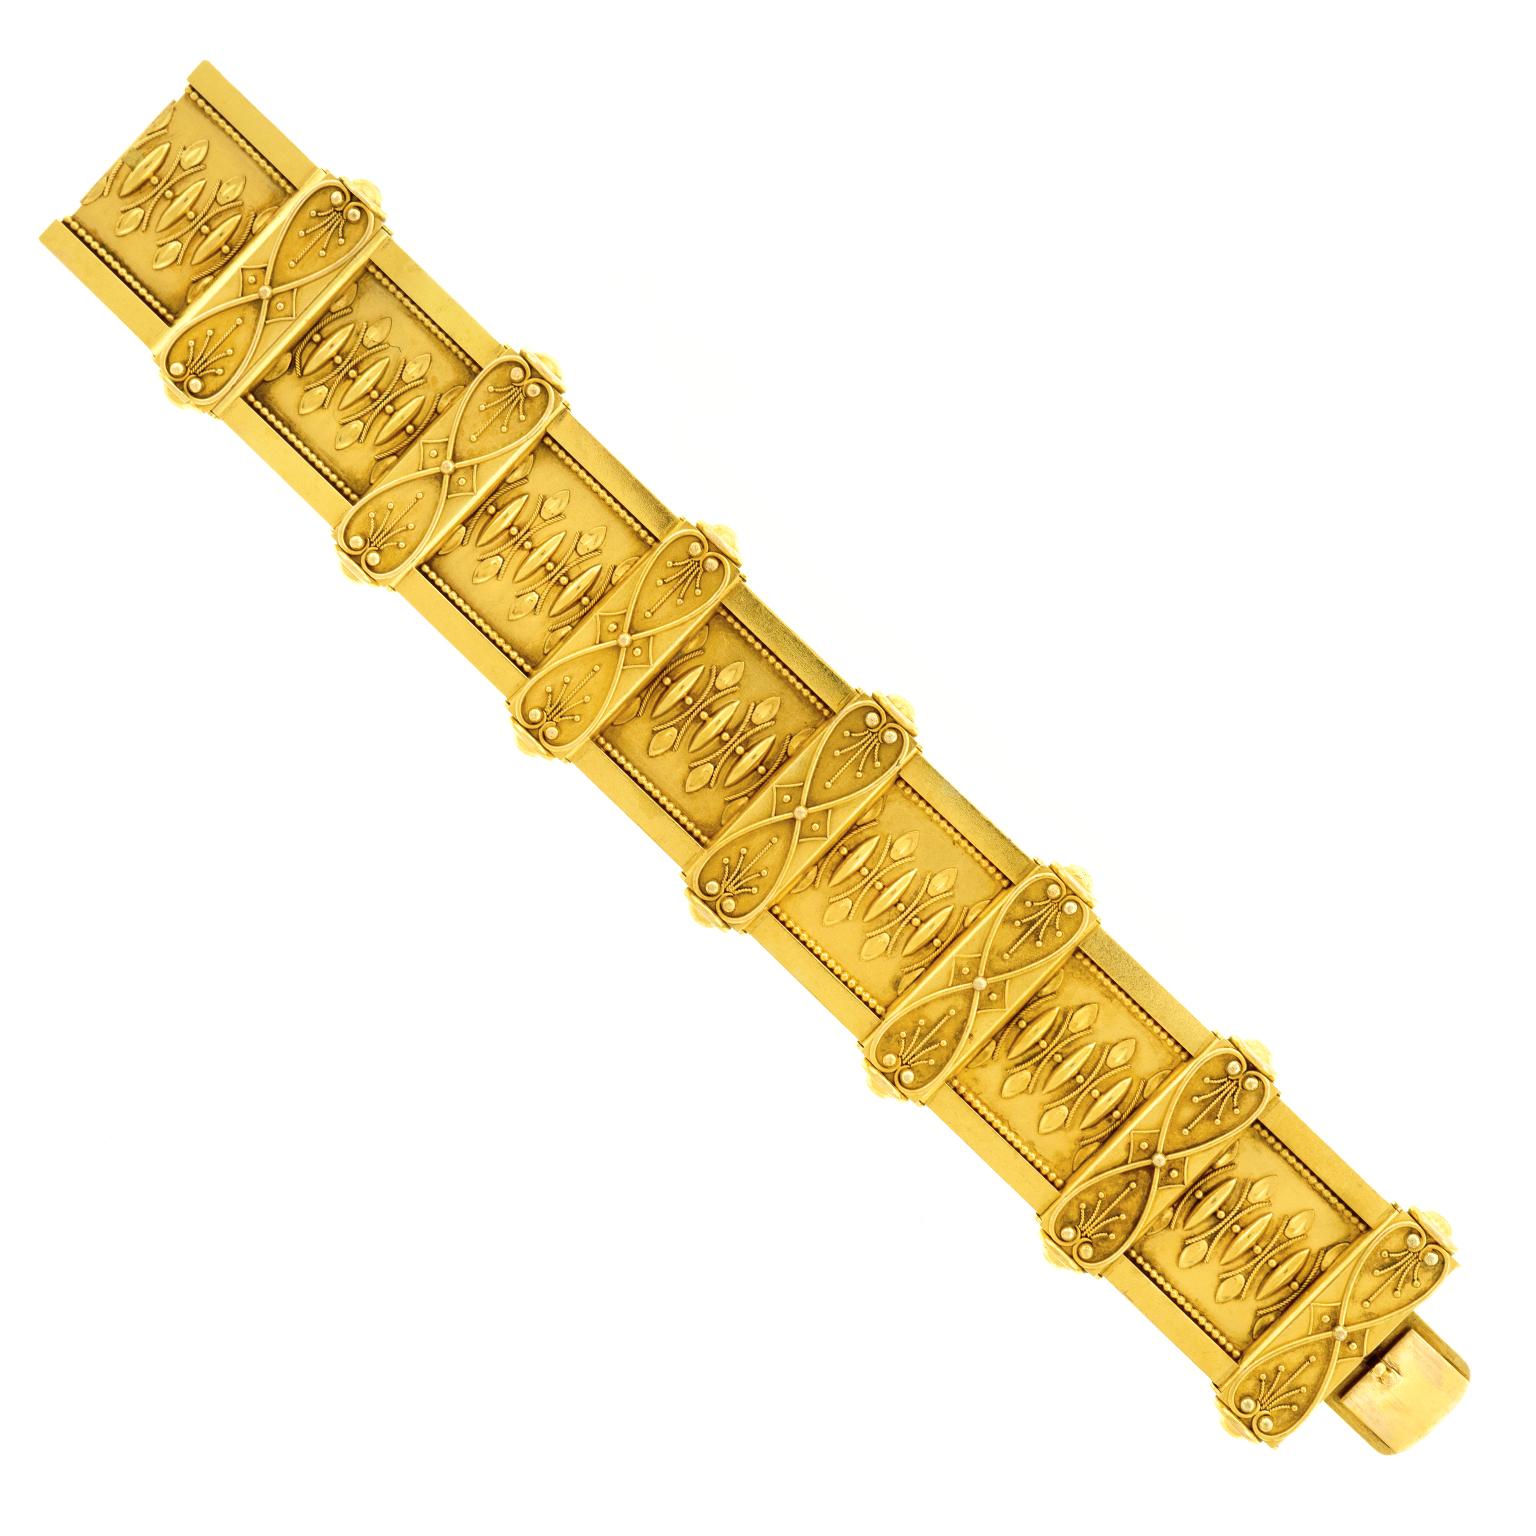 Antique Renaissance Revival Gold Bracelet 5